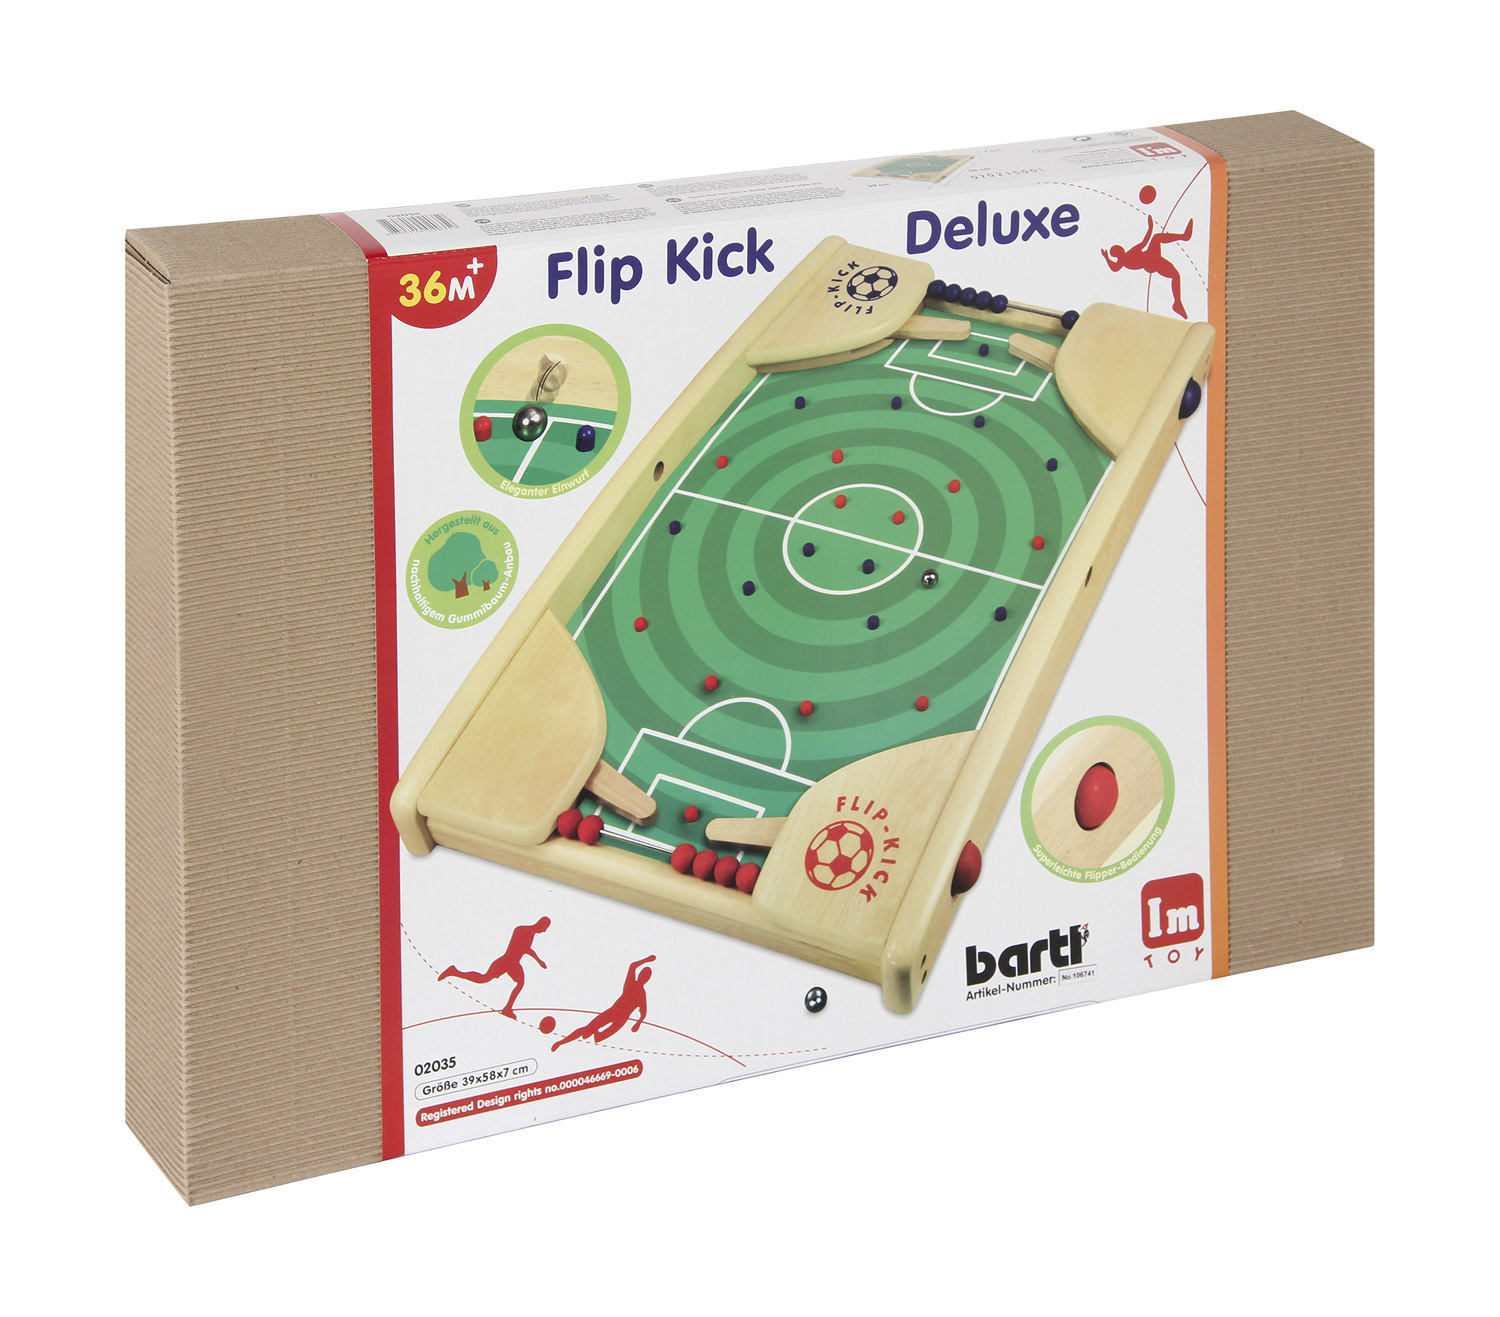 Flip Kick Deluxe